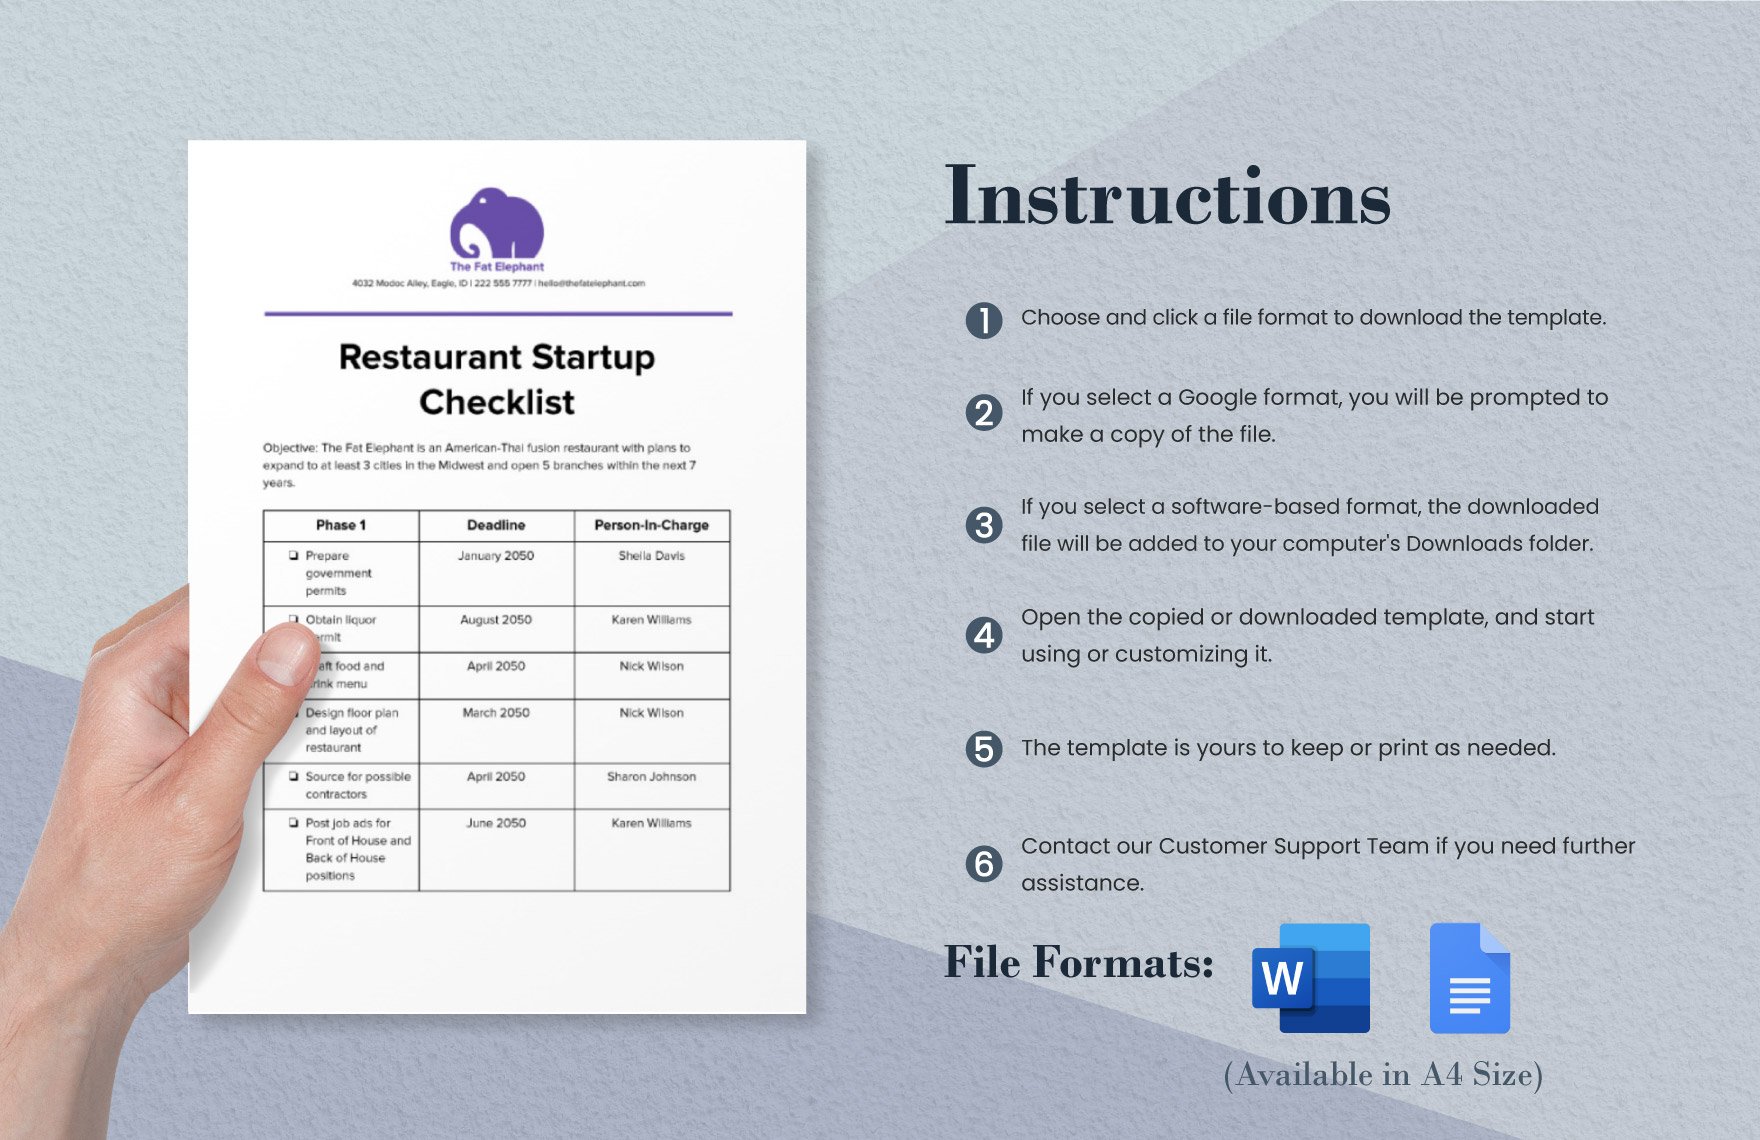 Restaurant Startup Checklist Template